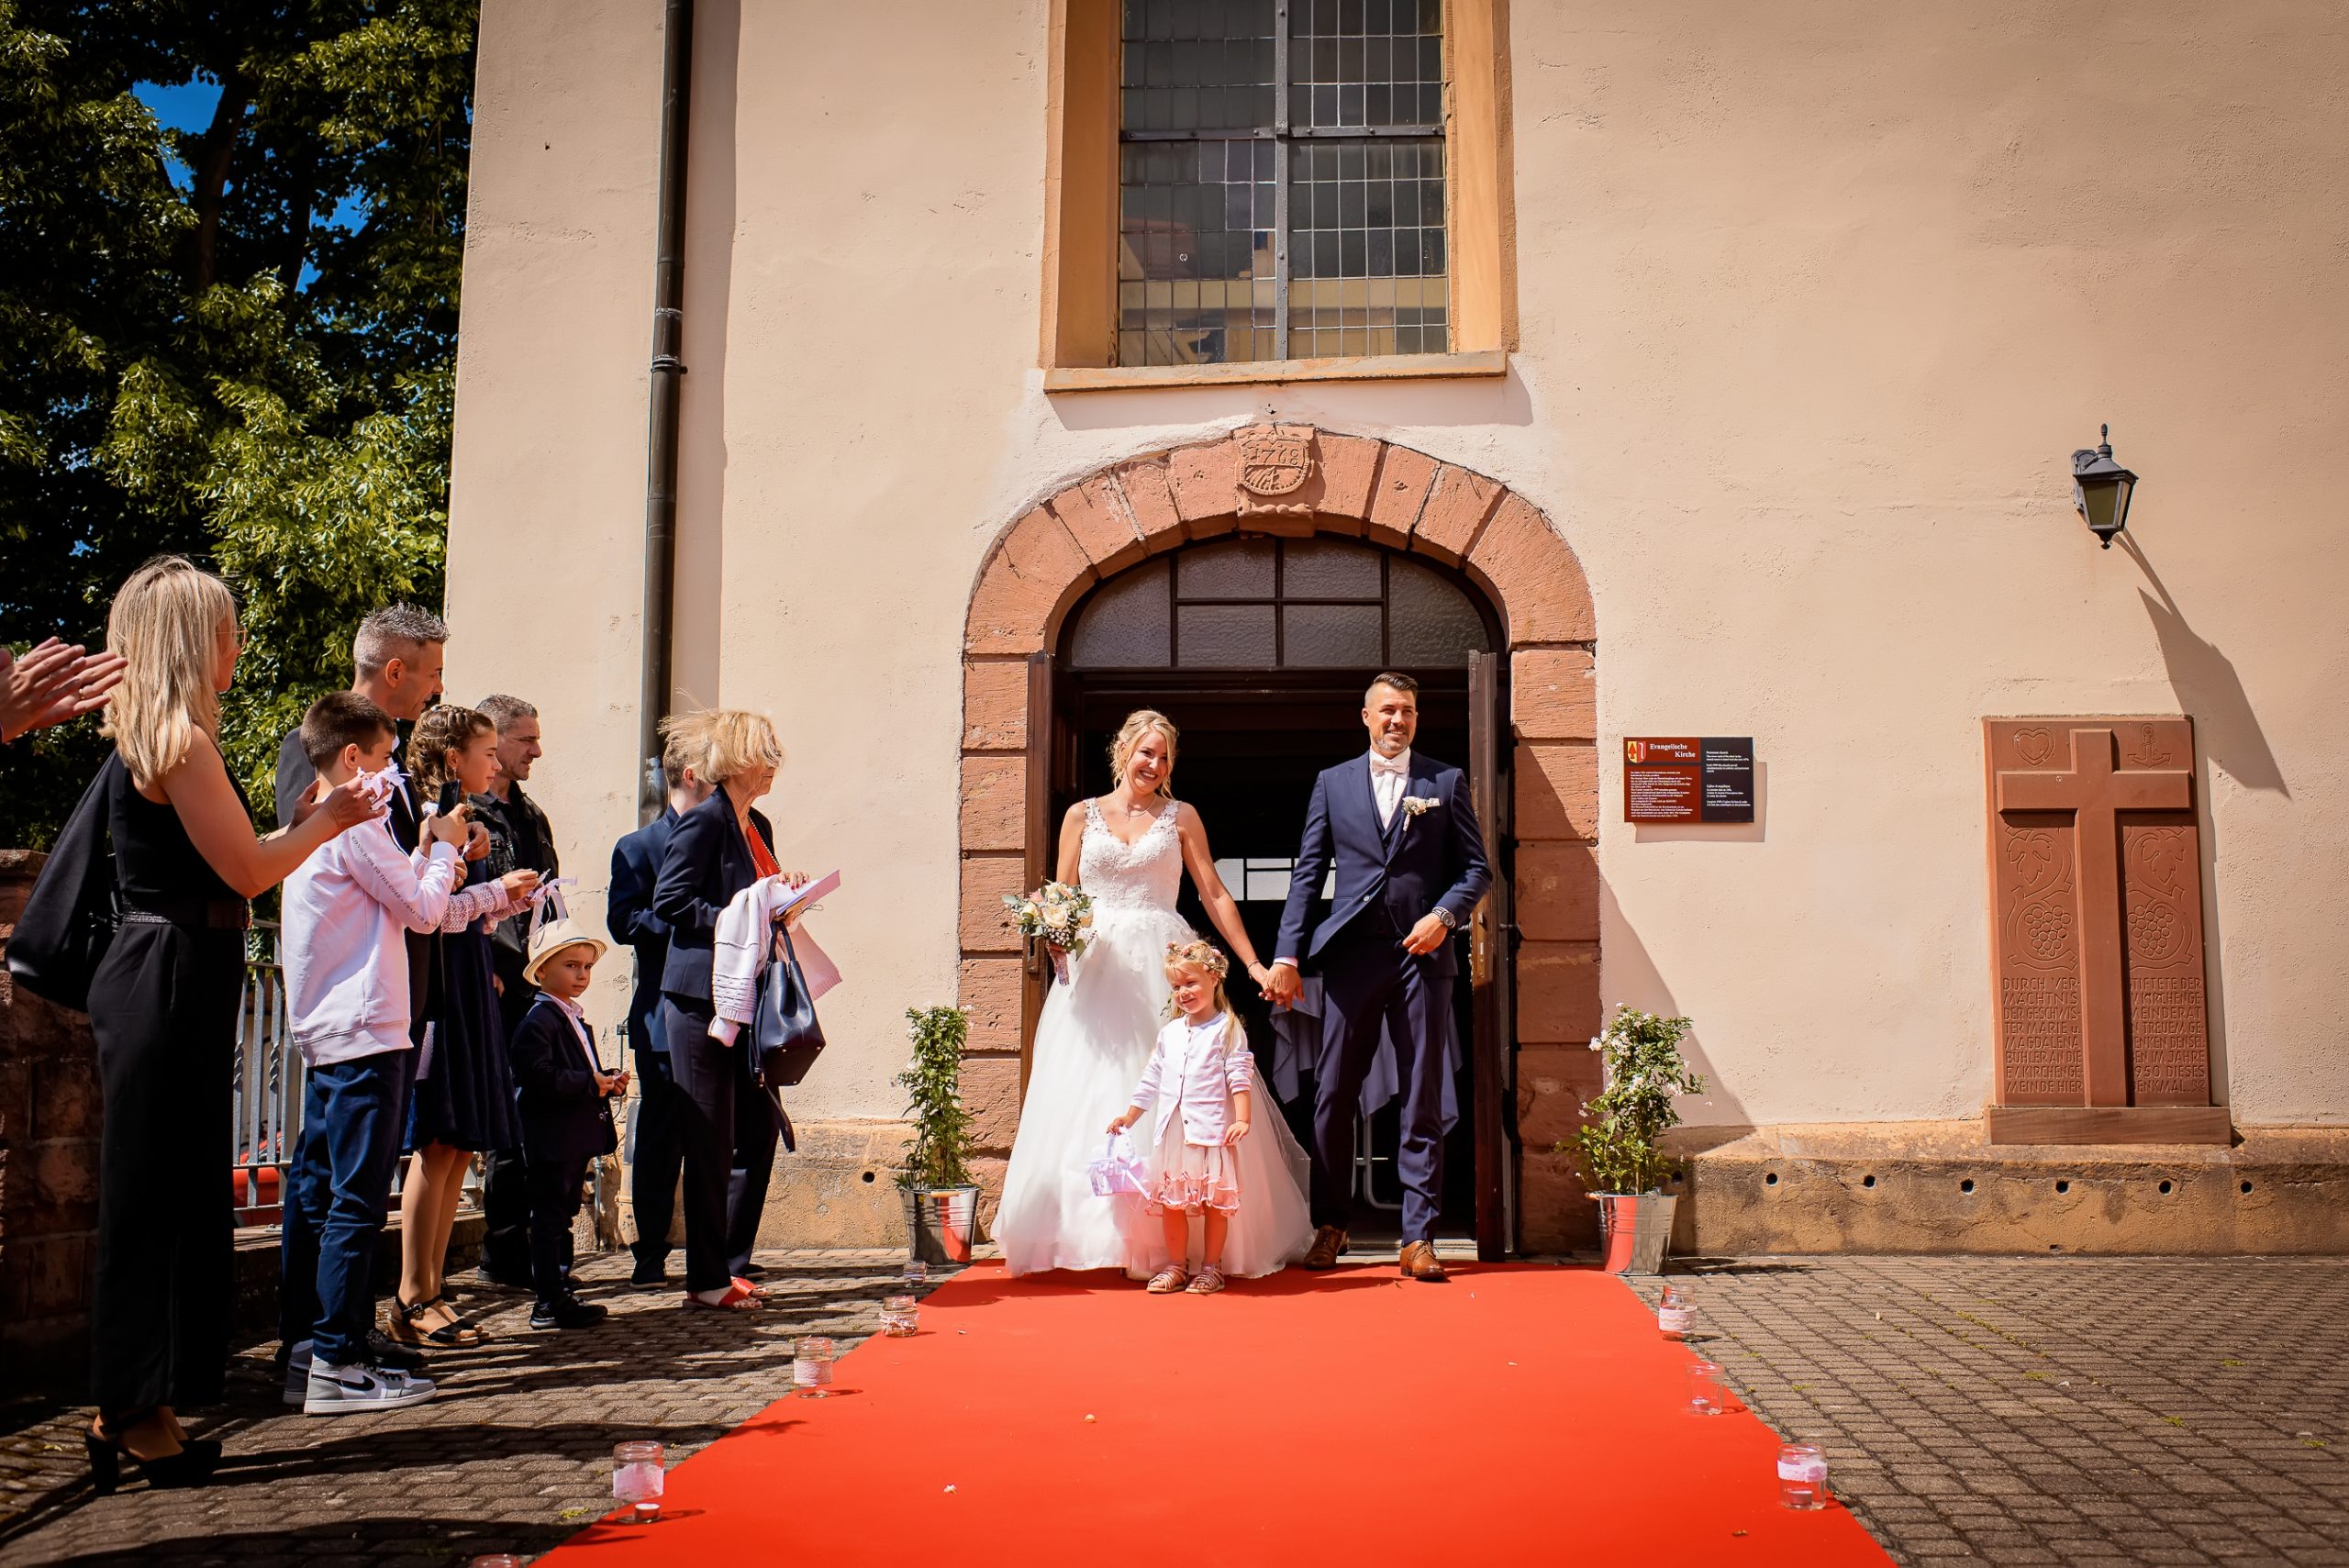 Ein glückliches Brautpaar verlässt die Evangelische Kirche in Friesenheim an einem sonnigen Sommertag, nachdem sie gerade ihre Hochzeitszeremonie abgeschlossen haben. Vor der Kirche liegt ein roter Teppich ausgerollt, der den Weg in eine neue gemeinsame Zukunft symbolisiert.